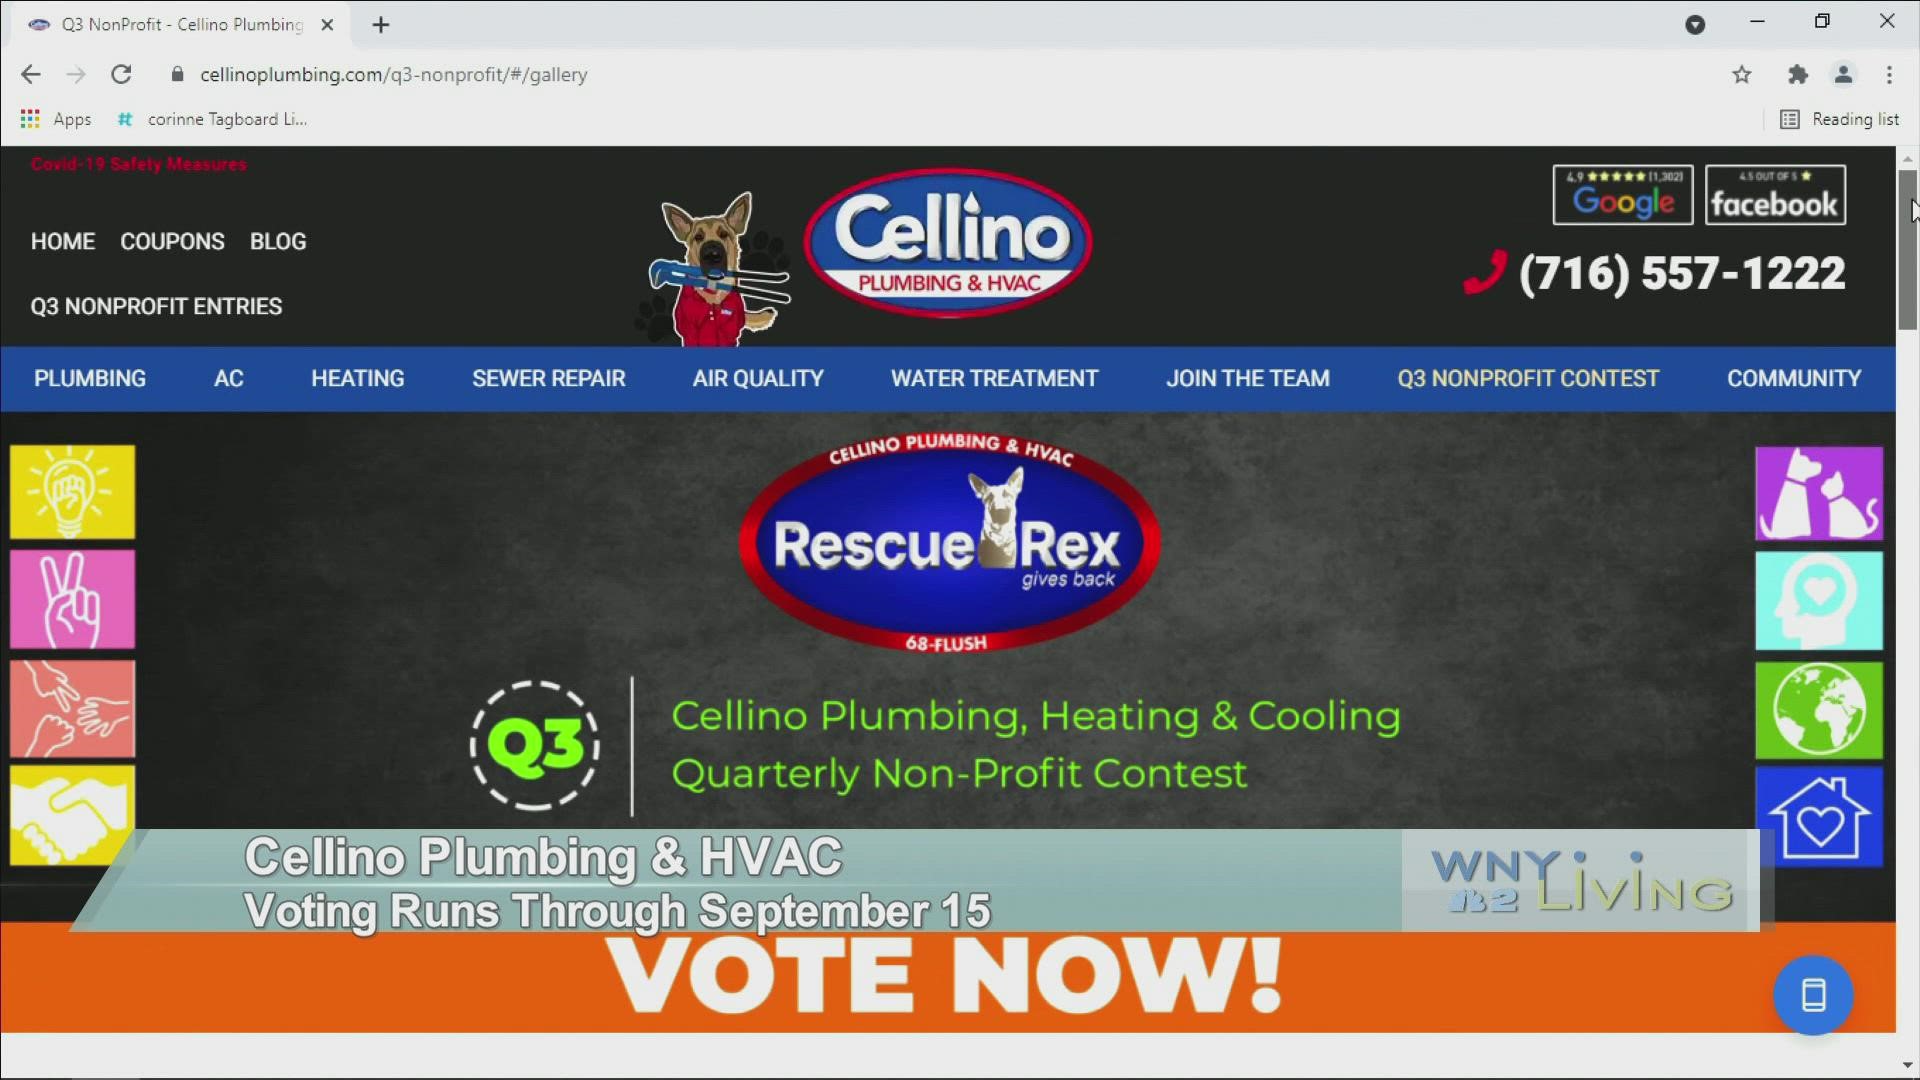 WNY Living - September 11 - Cellino Plumbing & HVAC (THIS VIDEO IS SPONSORED BY CELLINO PLUMBING & HVAC)